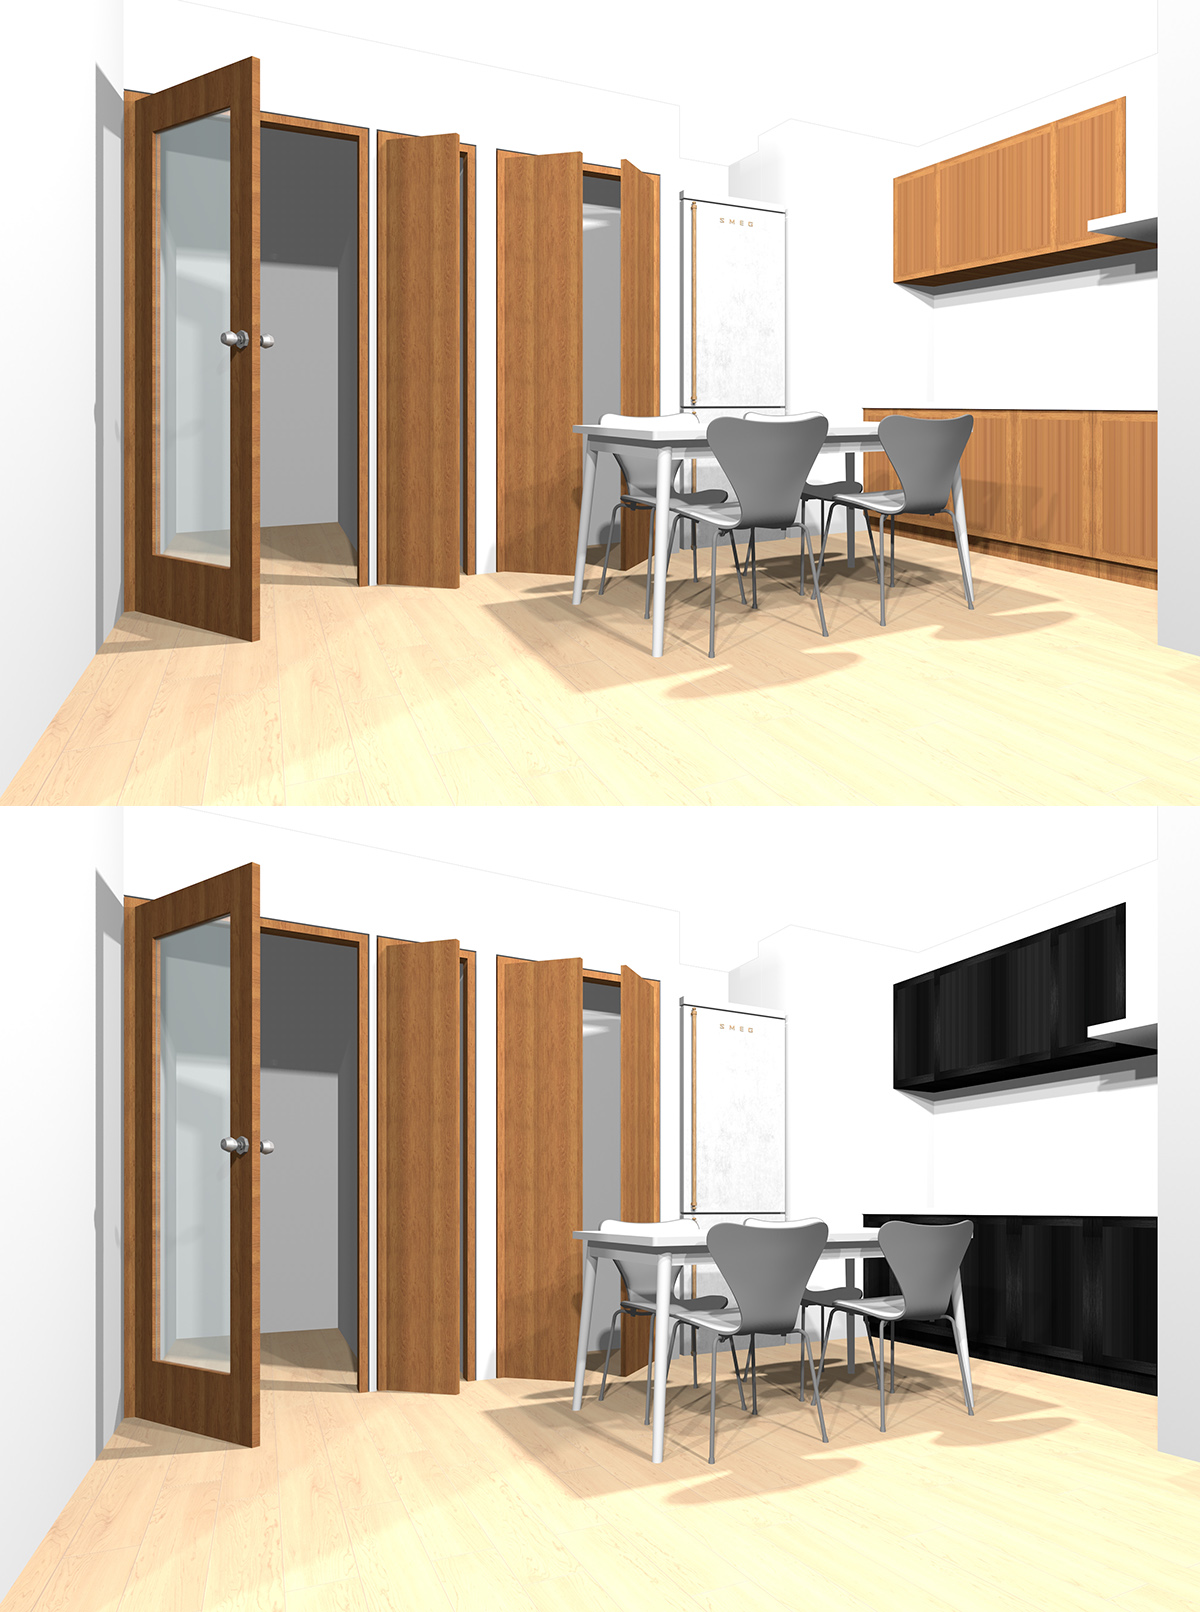 茶色の木目扉の壁付けキッチンと黒の木目扉の壁付けキッチンの比較パース